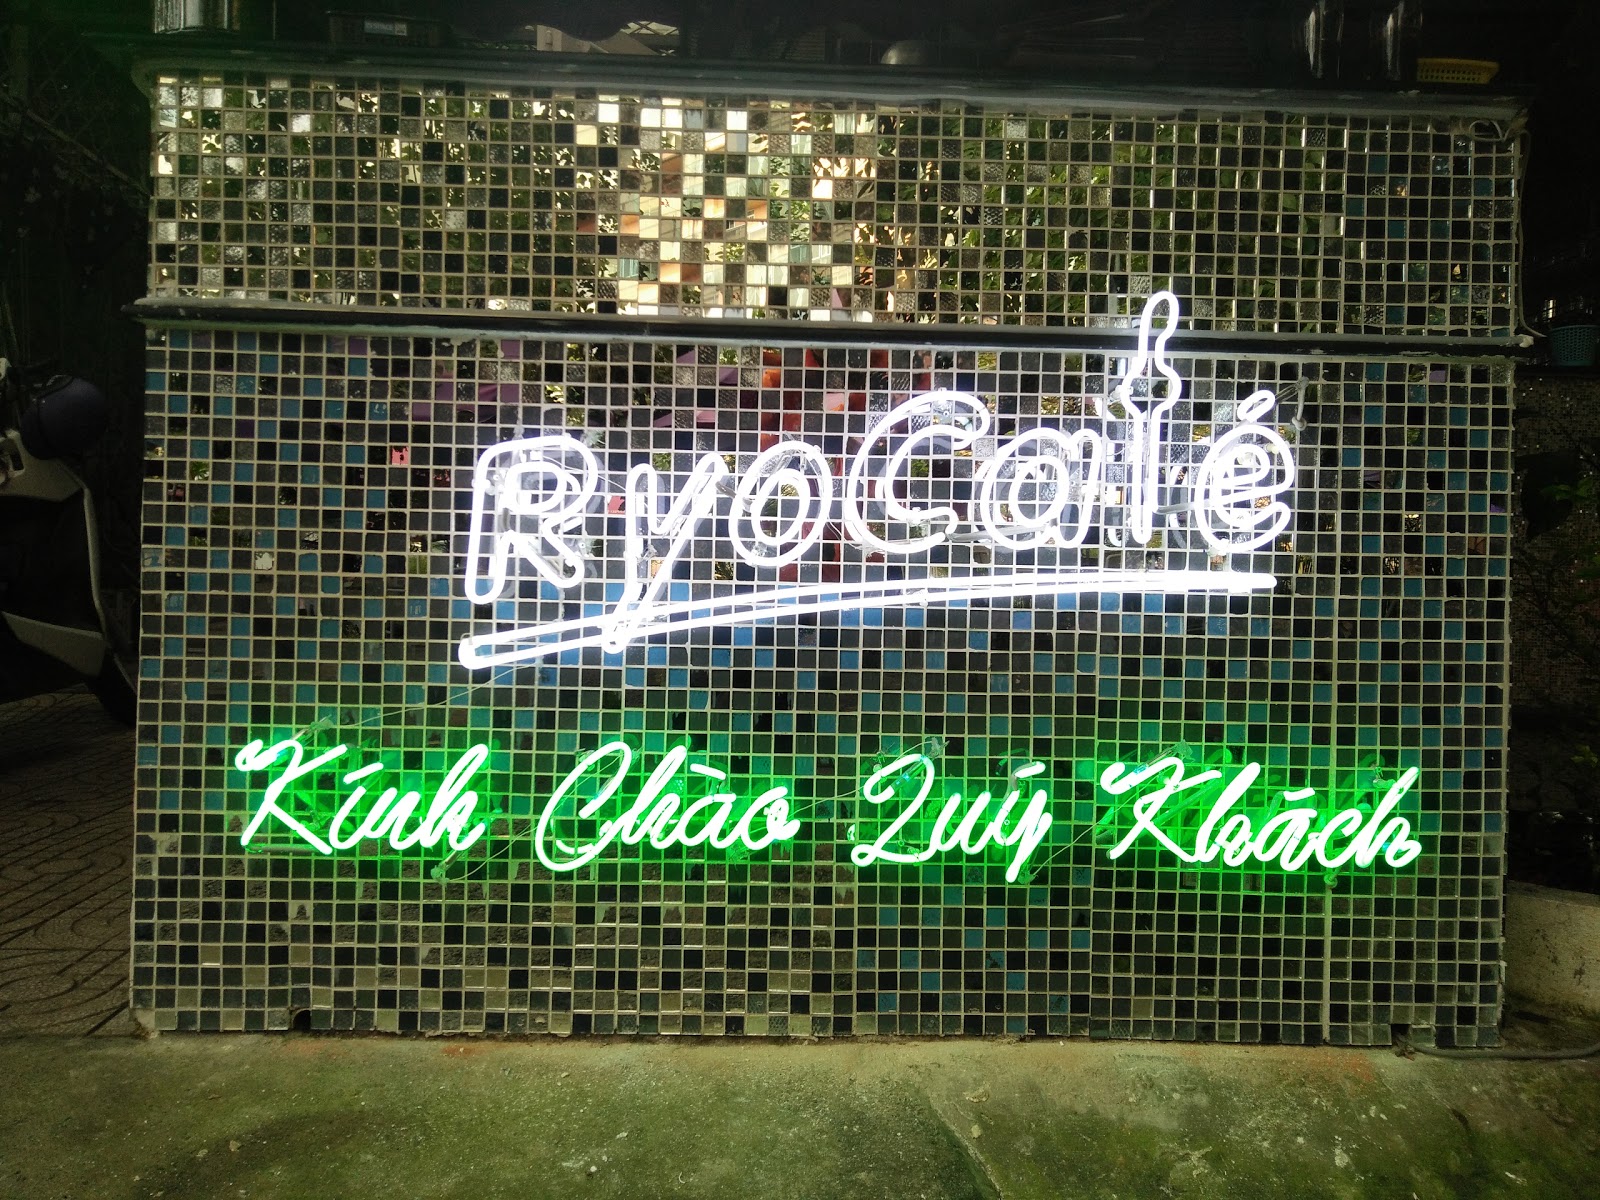 Thi công bảng hiệu quảng cáo quán cafe đẹp tại Đà Nẵng LH: 0974480518